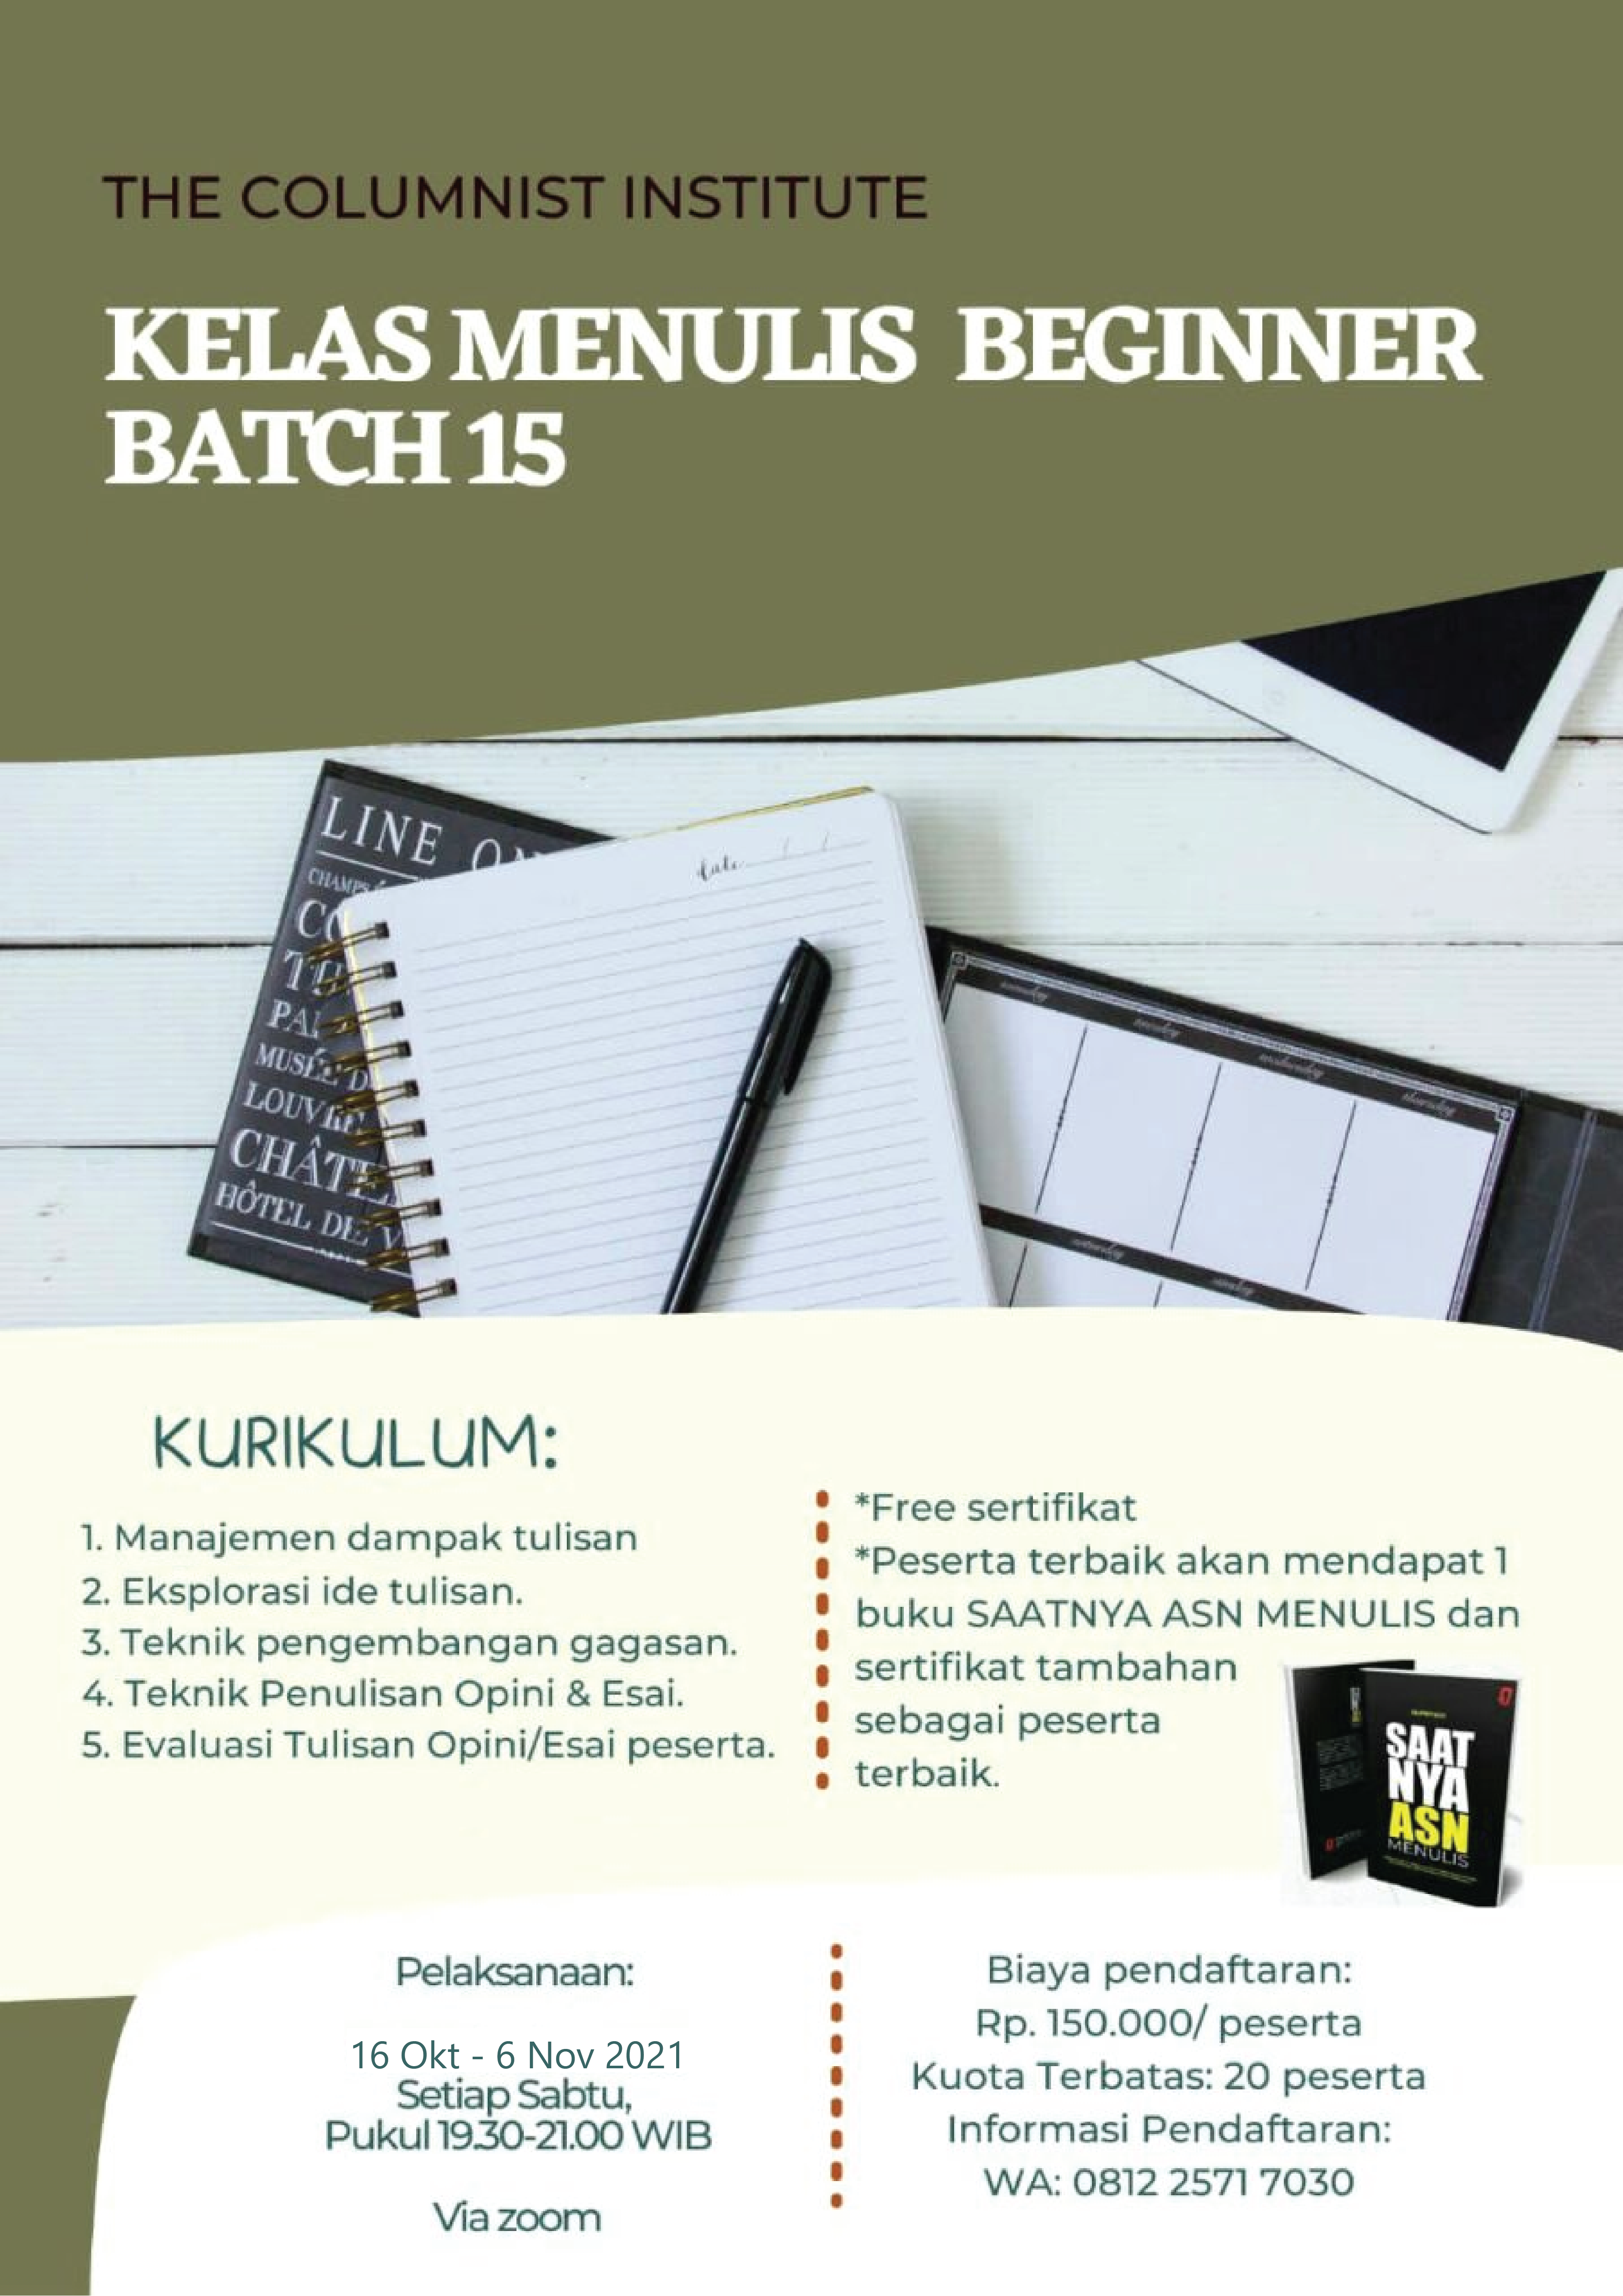 Pendaftaran Kelas Menulis Beginner #Batch 15 Telah Dibuka!